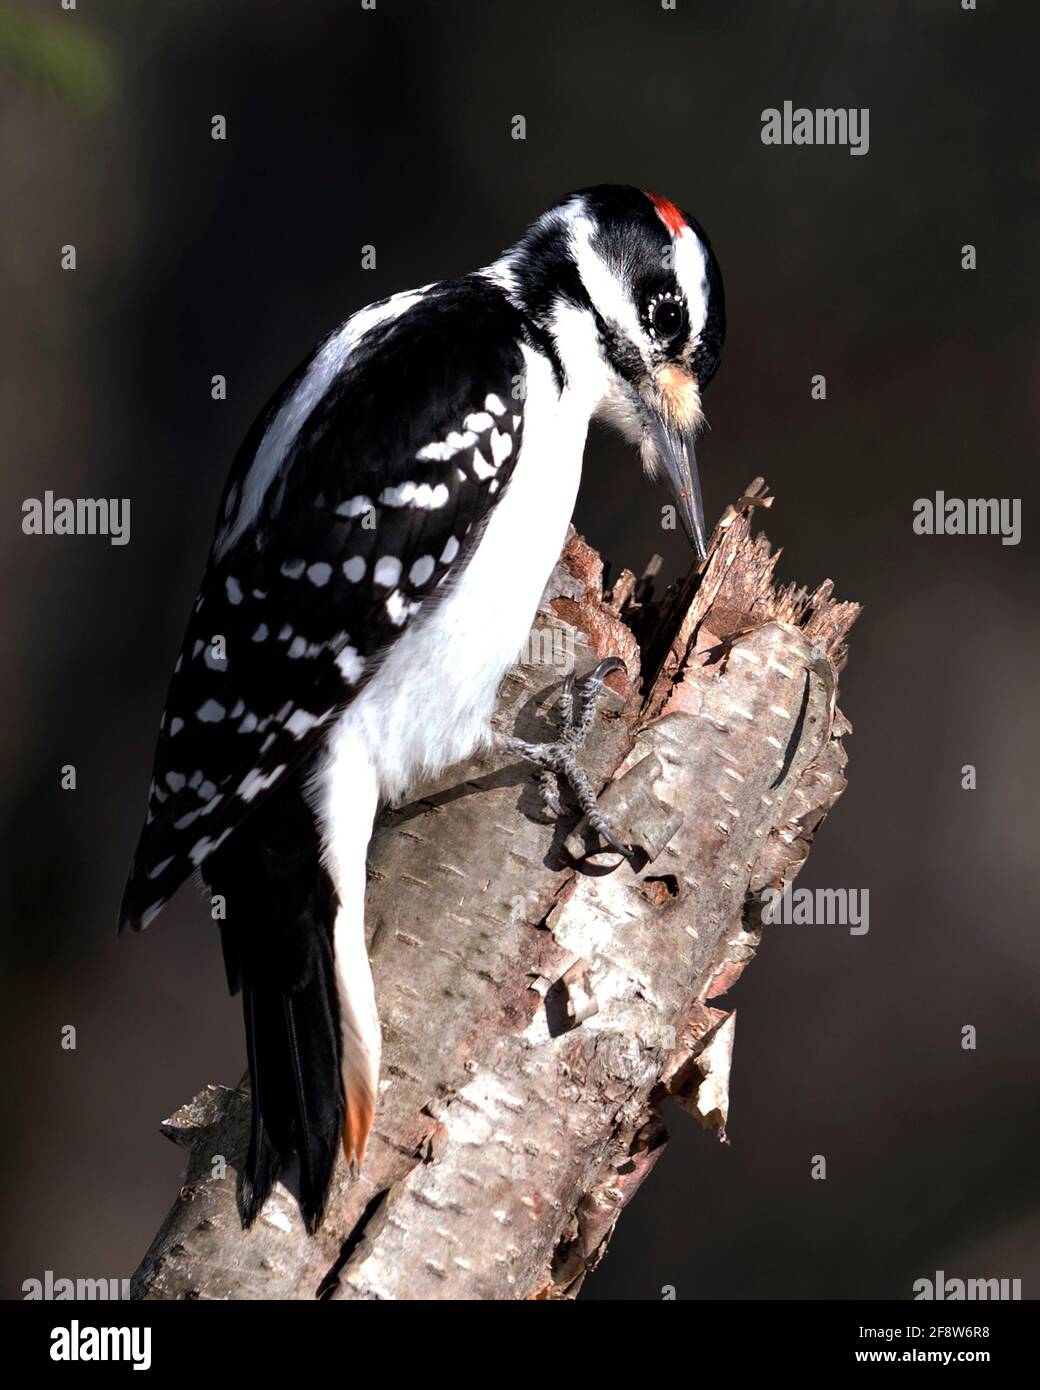 Vista de perfil de primer plano macho de carpintero encaramado en un tocón de árbol con fondo borroso en su entorno y hábitat. Imagen. Imagen. Vertical. Foto de stock